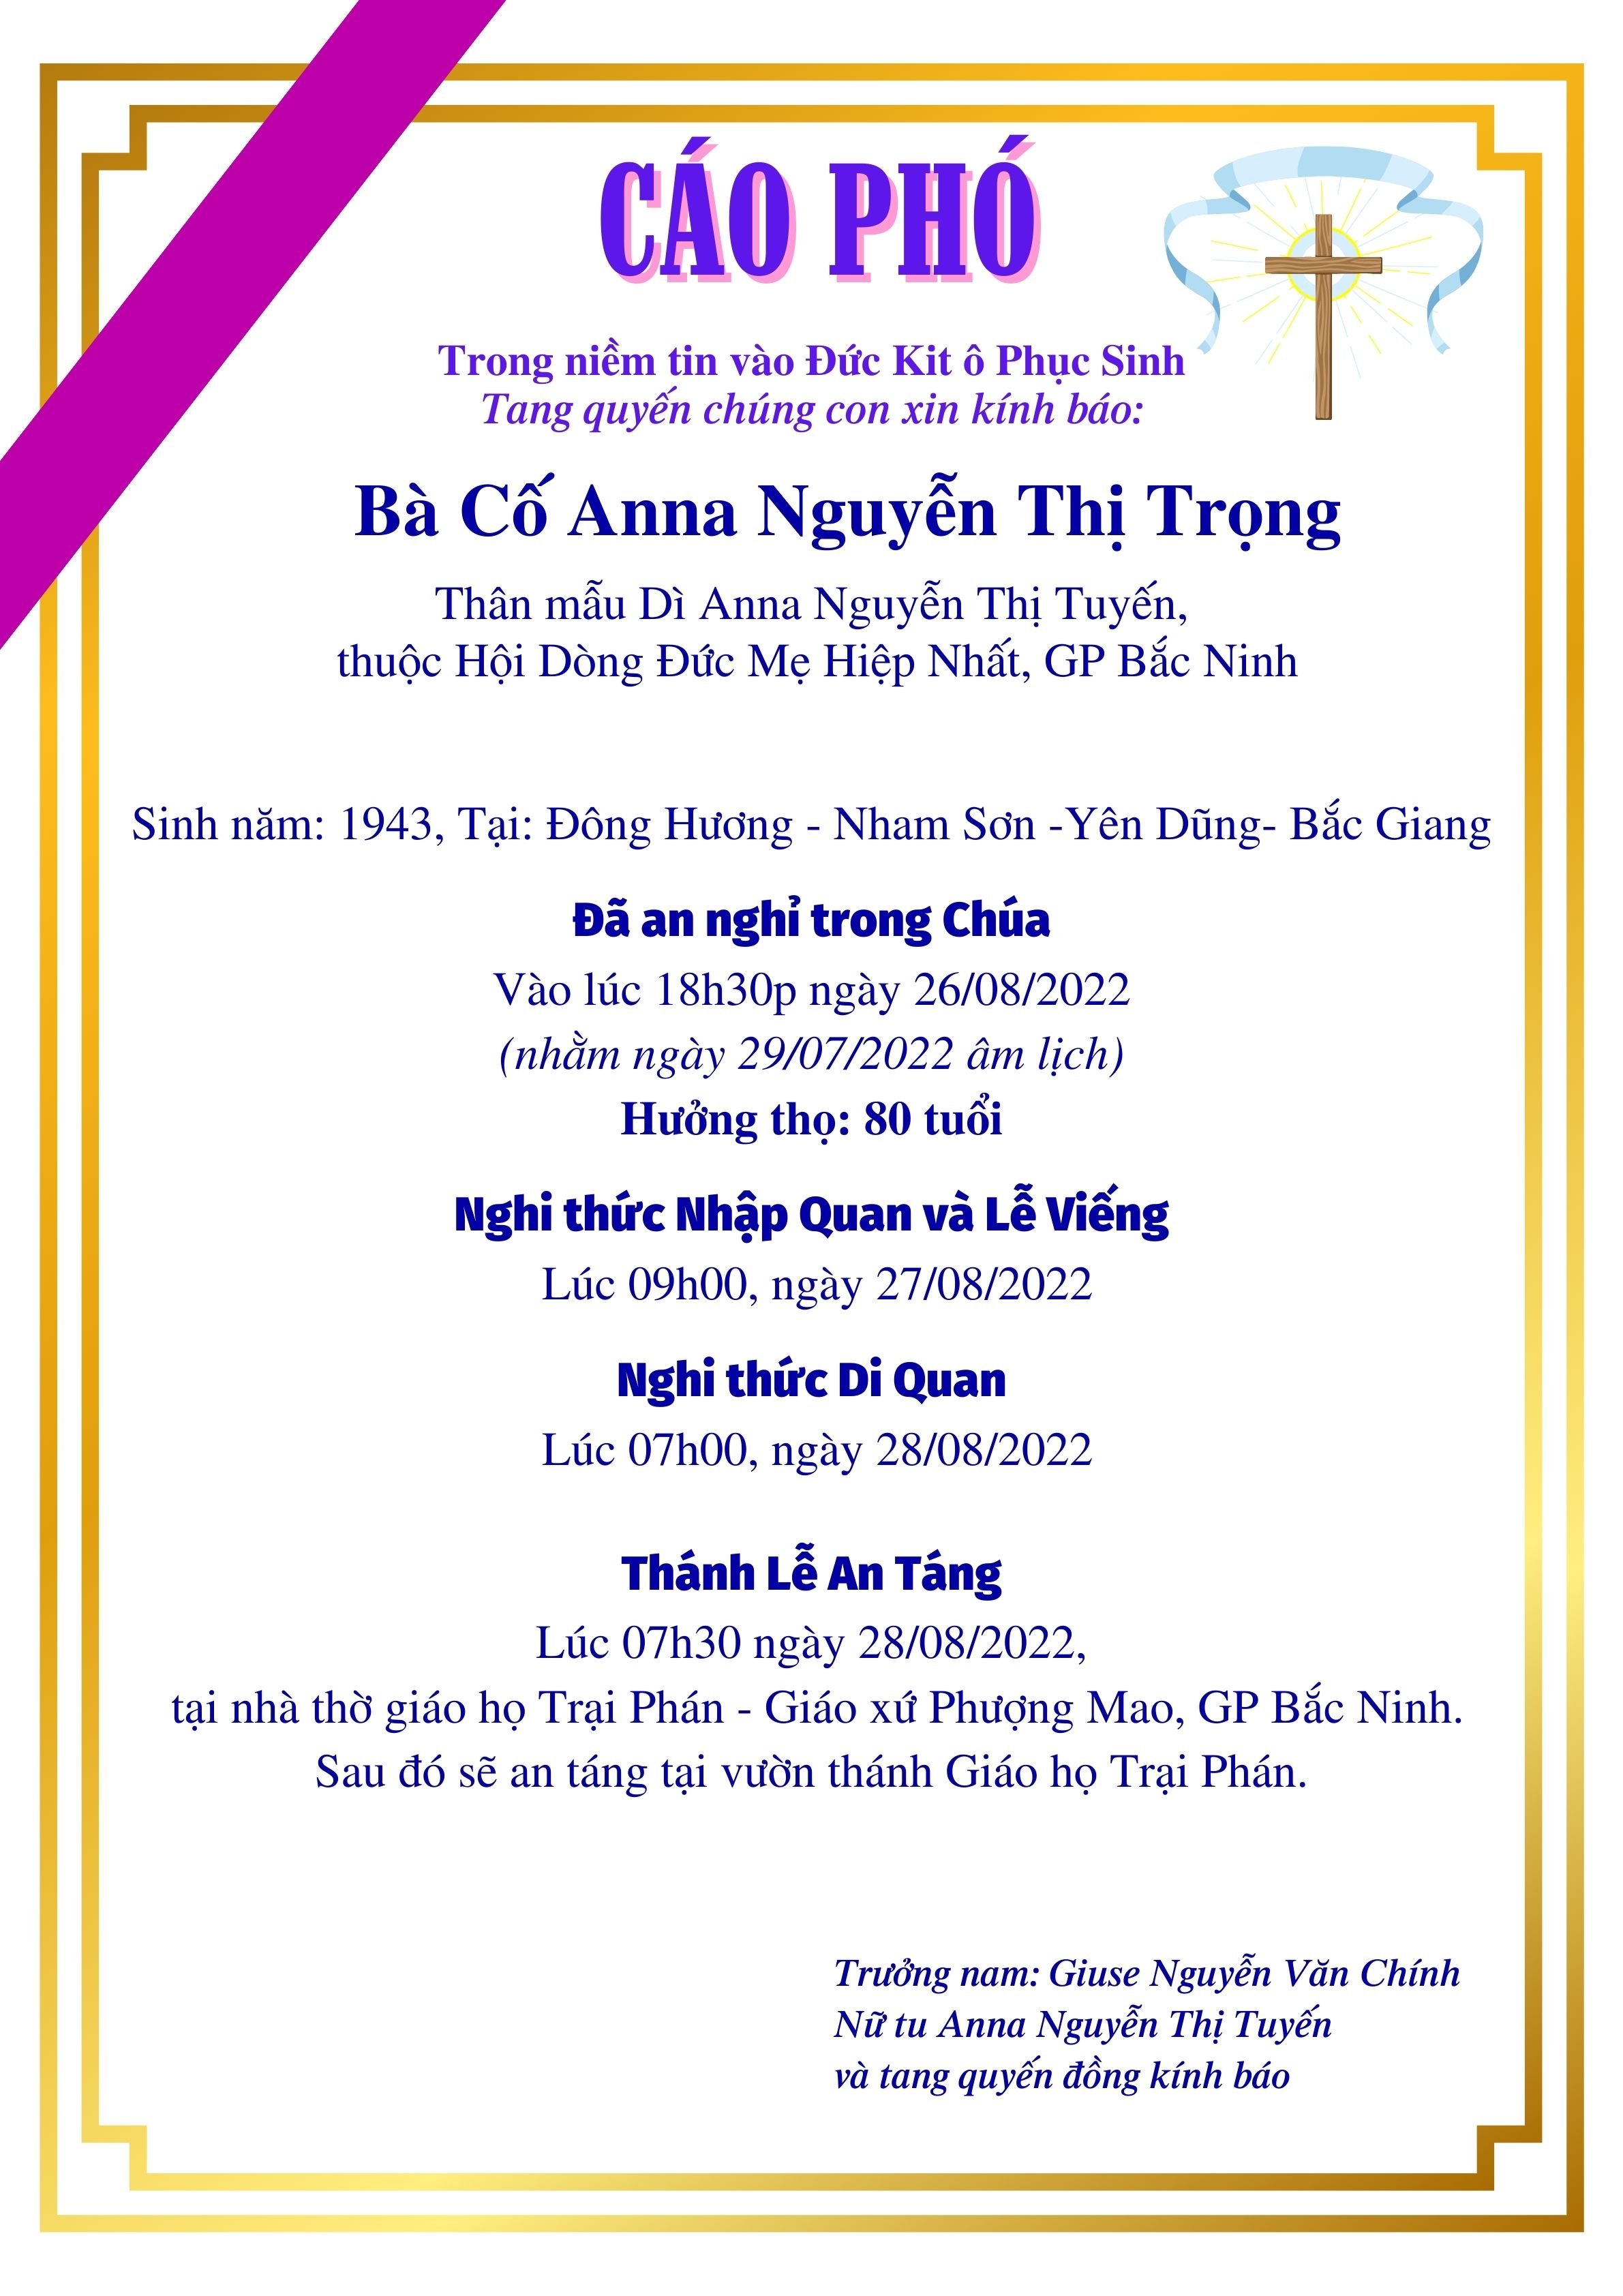 GP.Bắc Ninh - Cáo phó bà cố Anna Nguyễn Thị Trọng, thân mẫu dì Anna Nguyễn Thị Tuyến